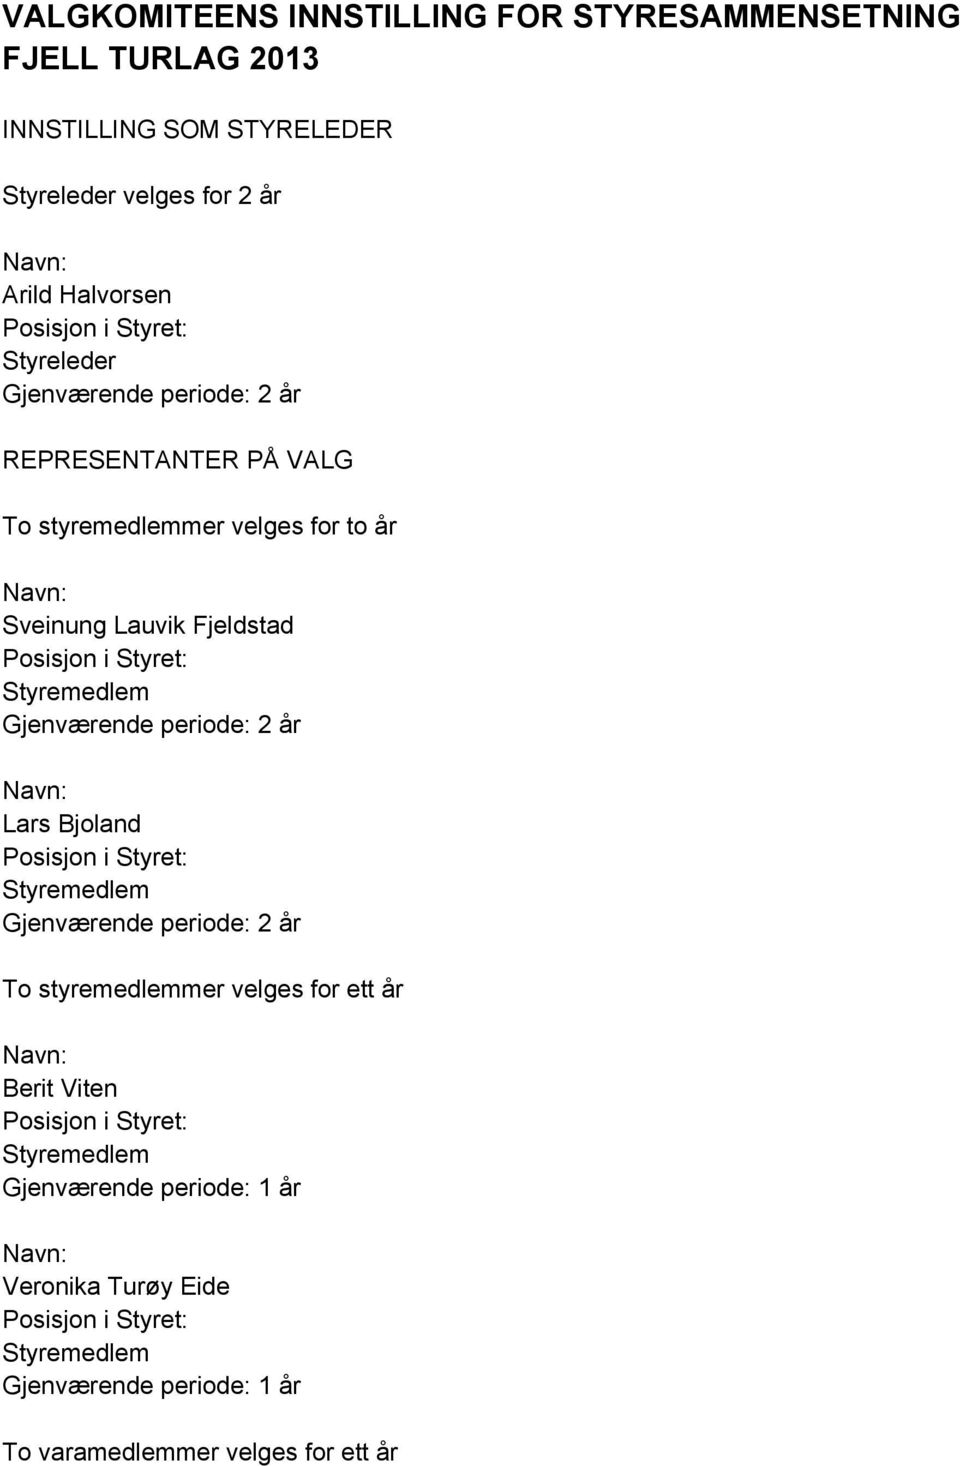 styremedlemmer velges for to år Sveinung Lauvik Fjeldstad Gjenværende periode: 2 år Lars Bjoland